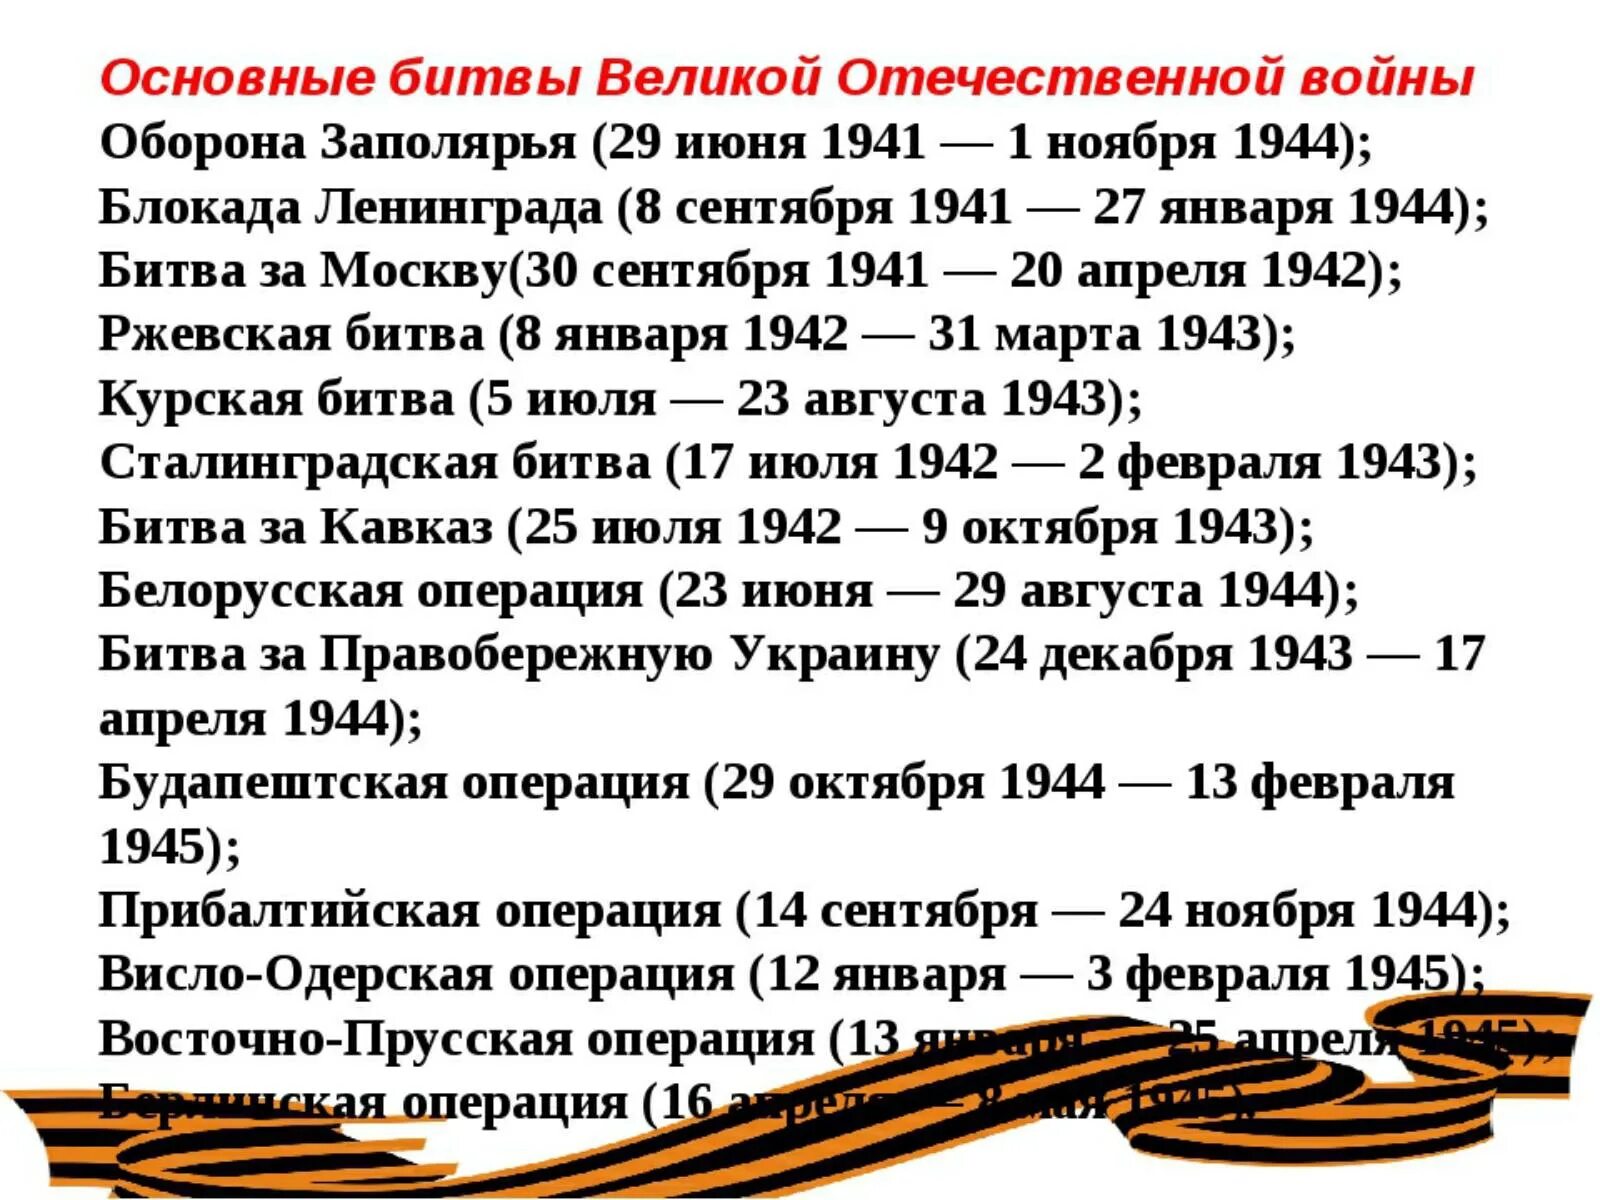 2 февраля даты события. Важнейшие битвы ВОВ даты. Даты крупных сражений Великой Отечественной войны. Даты Великой Отечественной войны основные 1945.